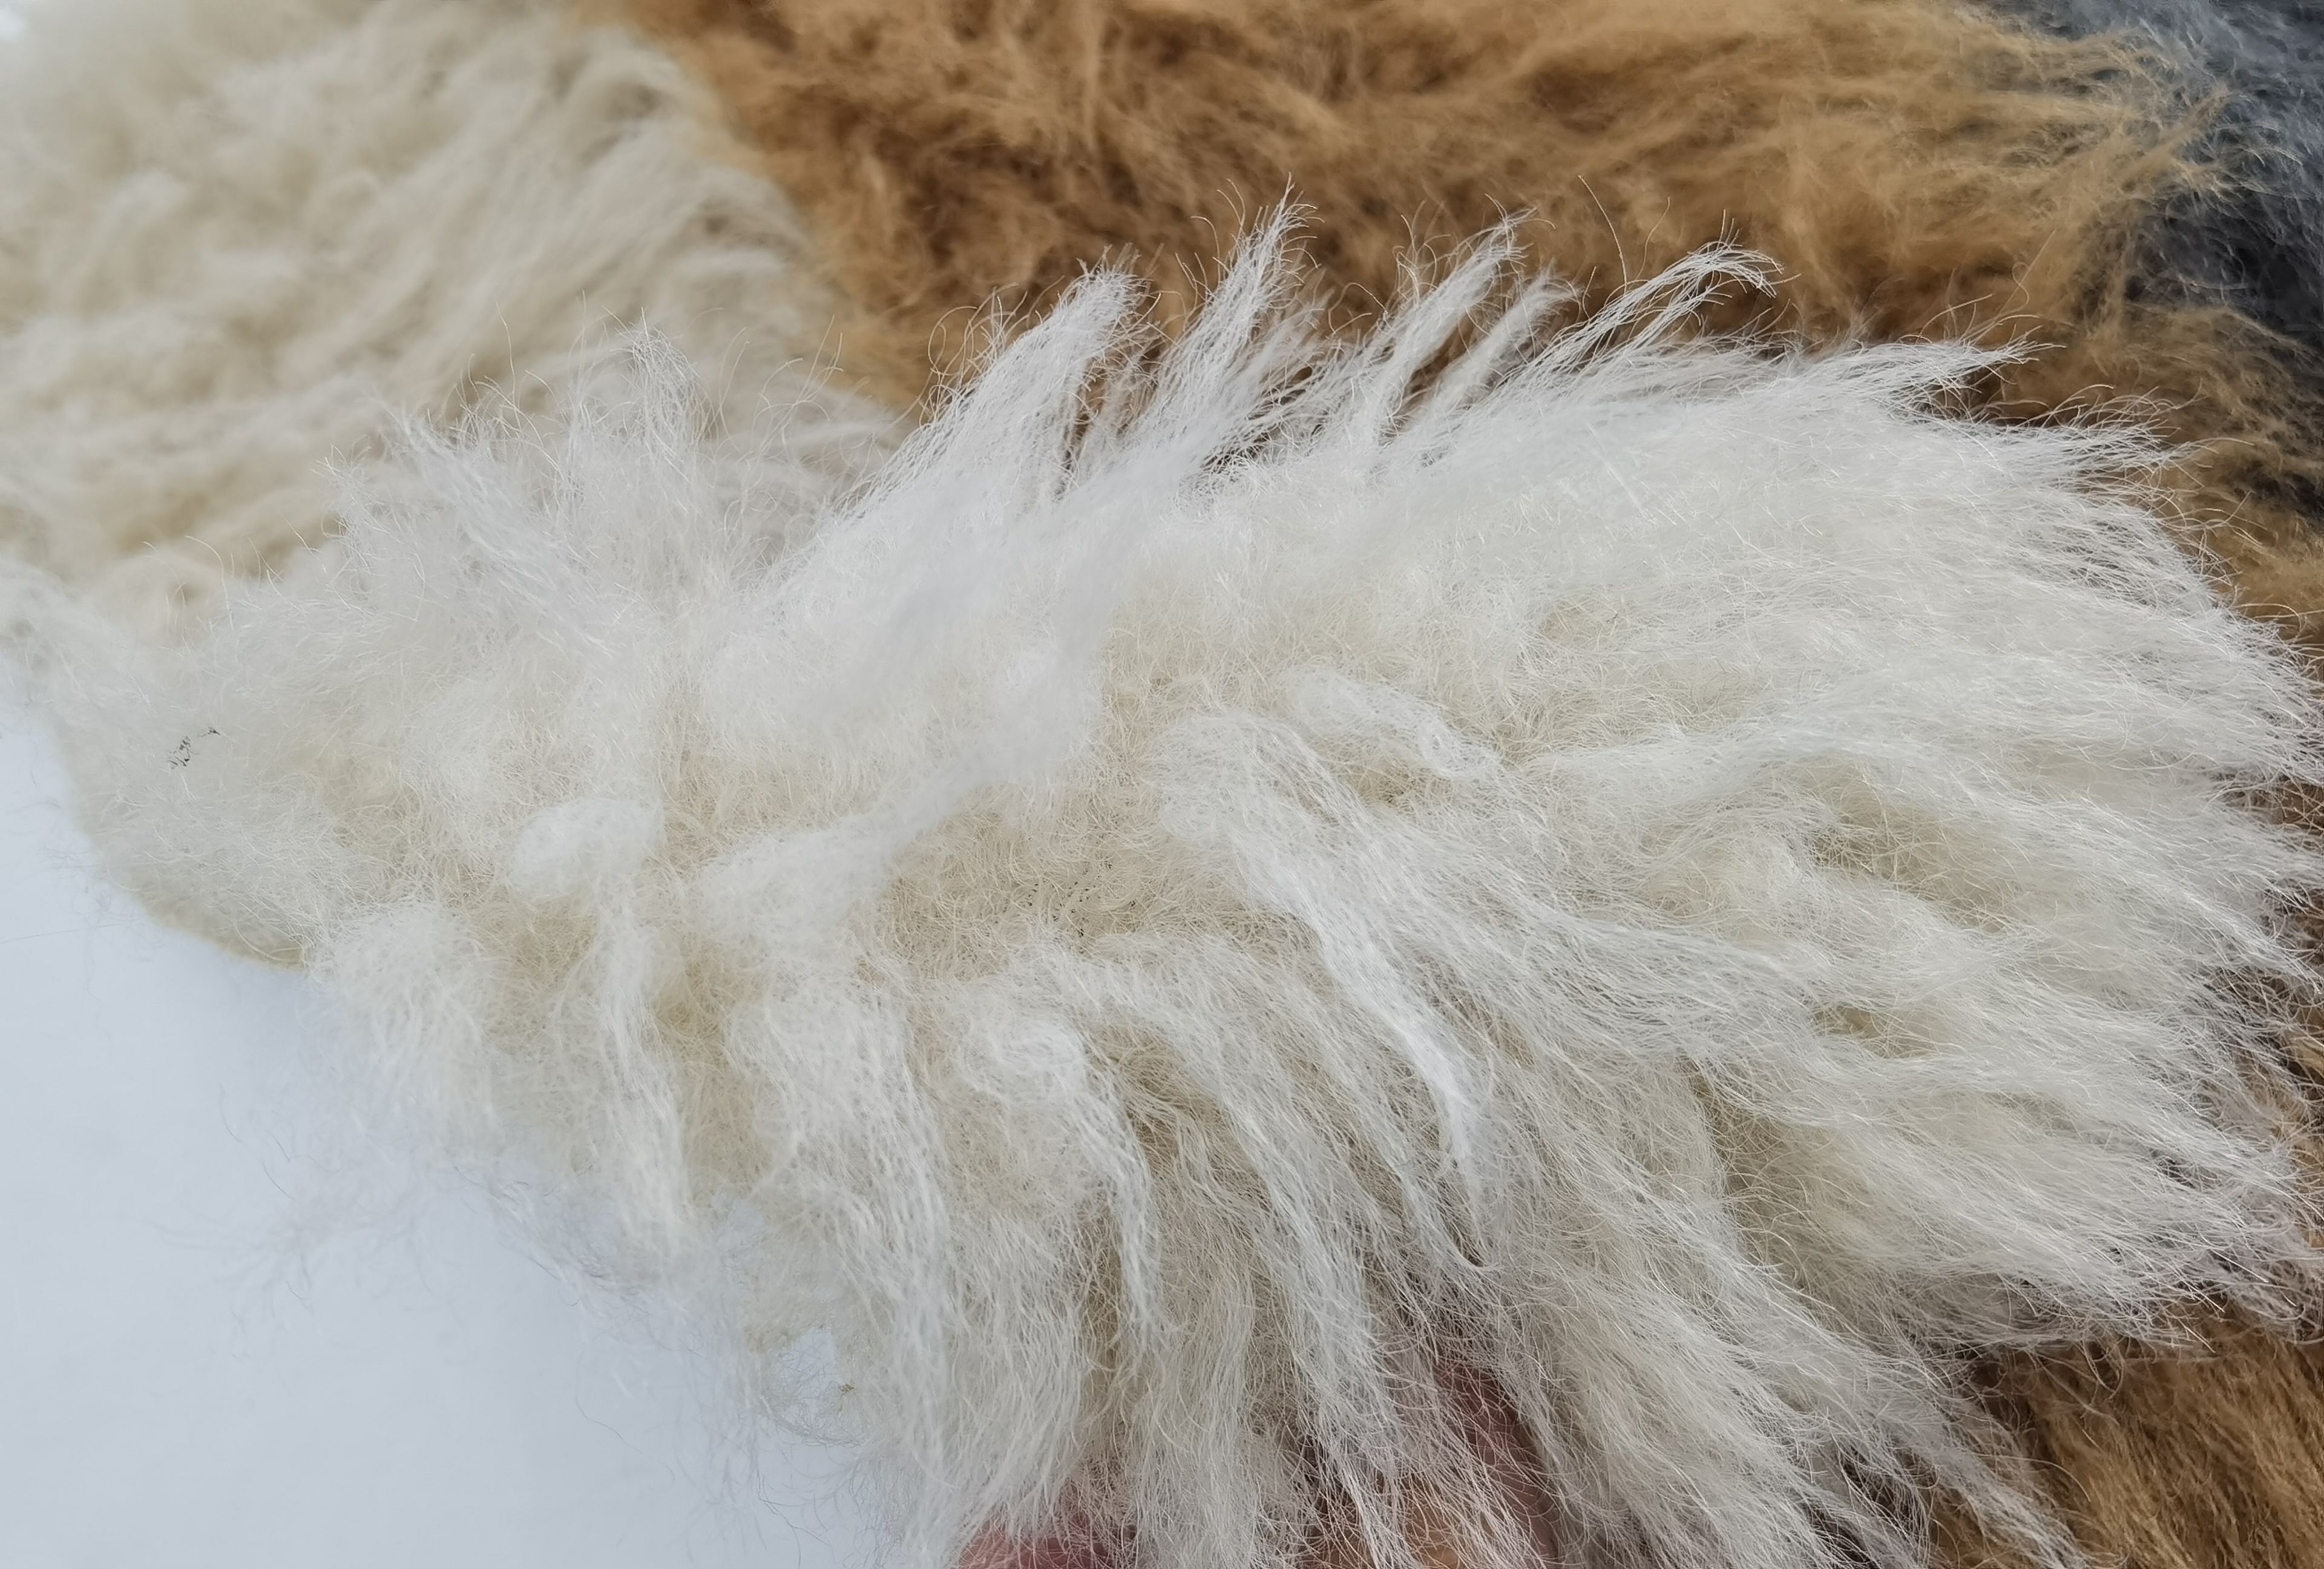  long hair faux fur poms slides fabric